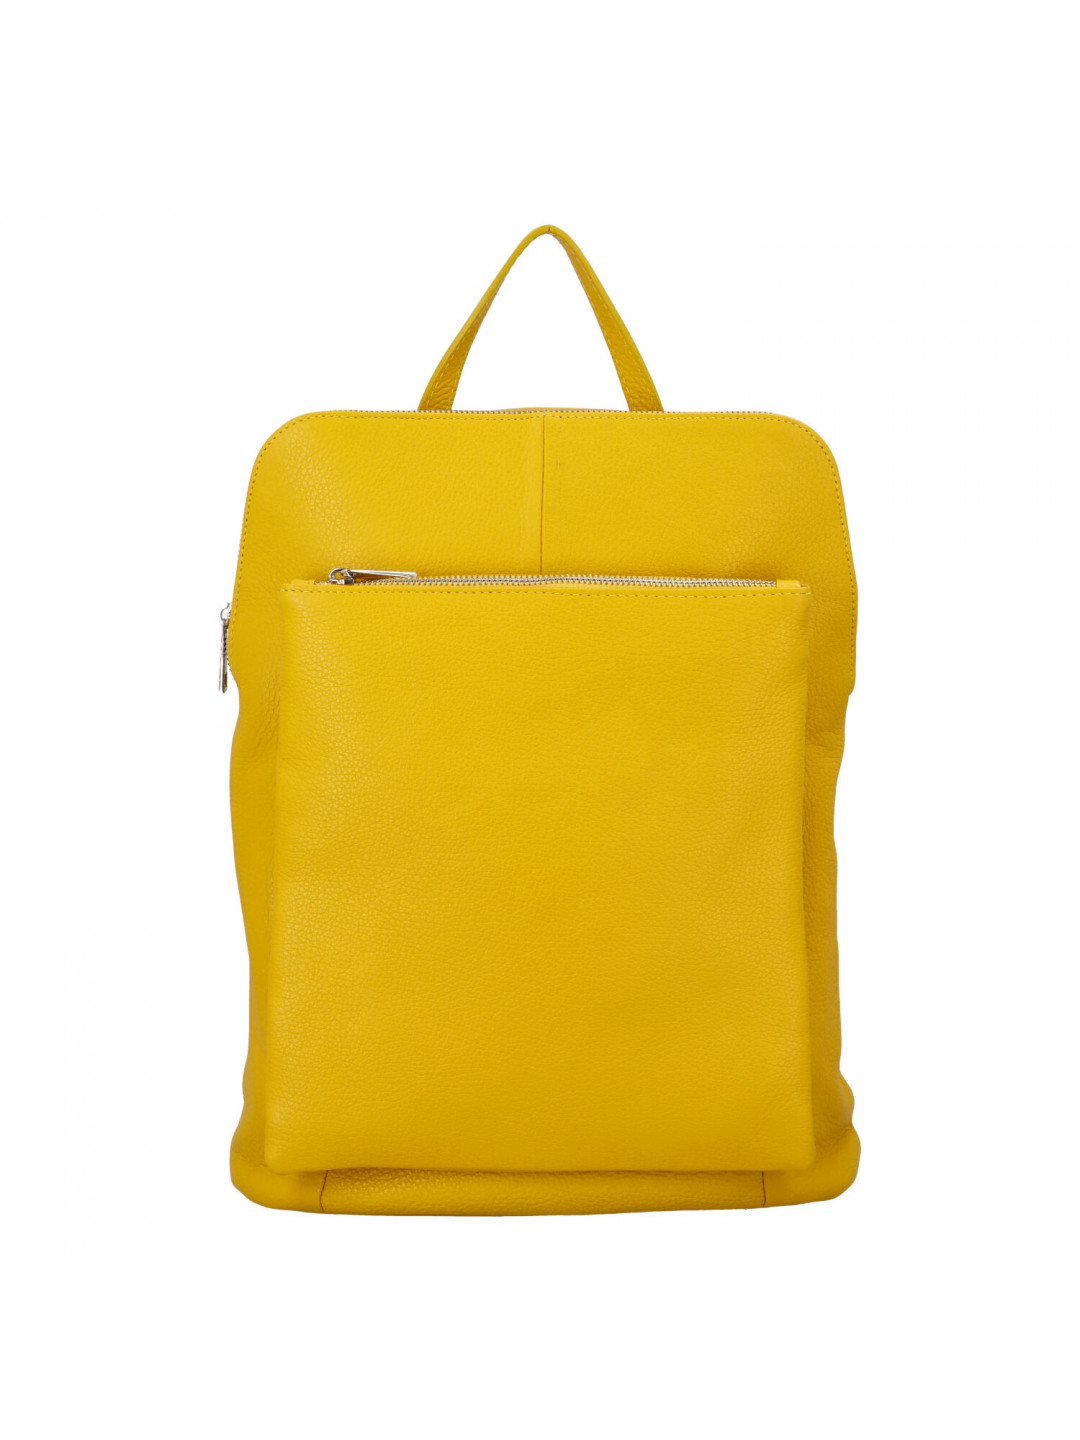 Prostorný dámský kožený batoh Jean žlutý